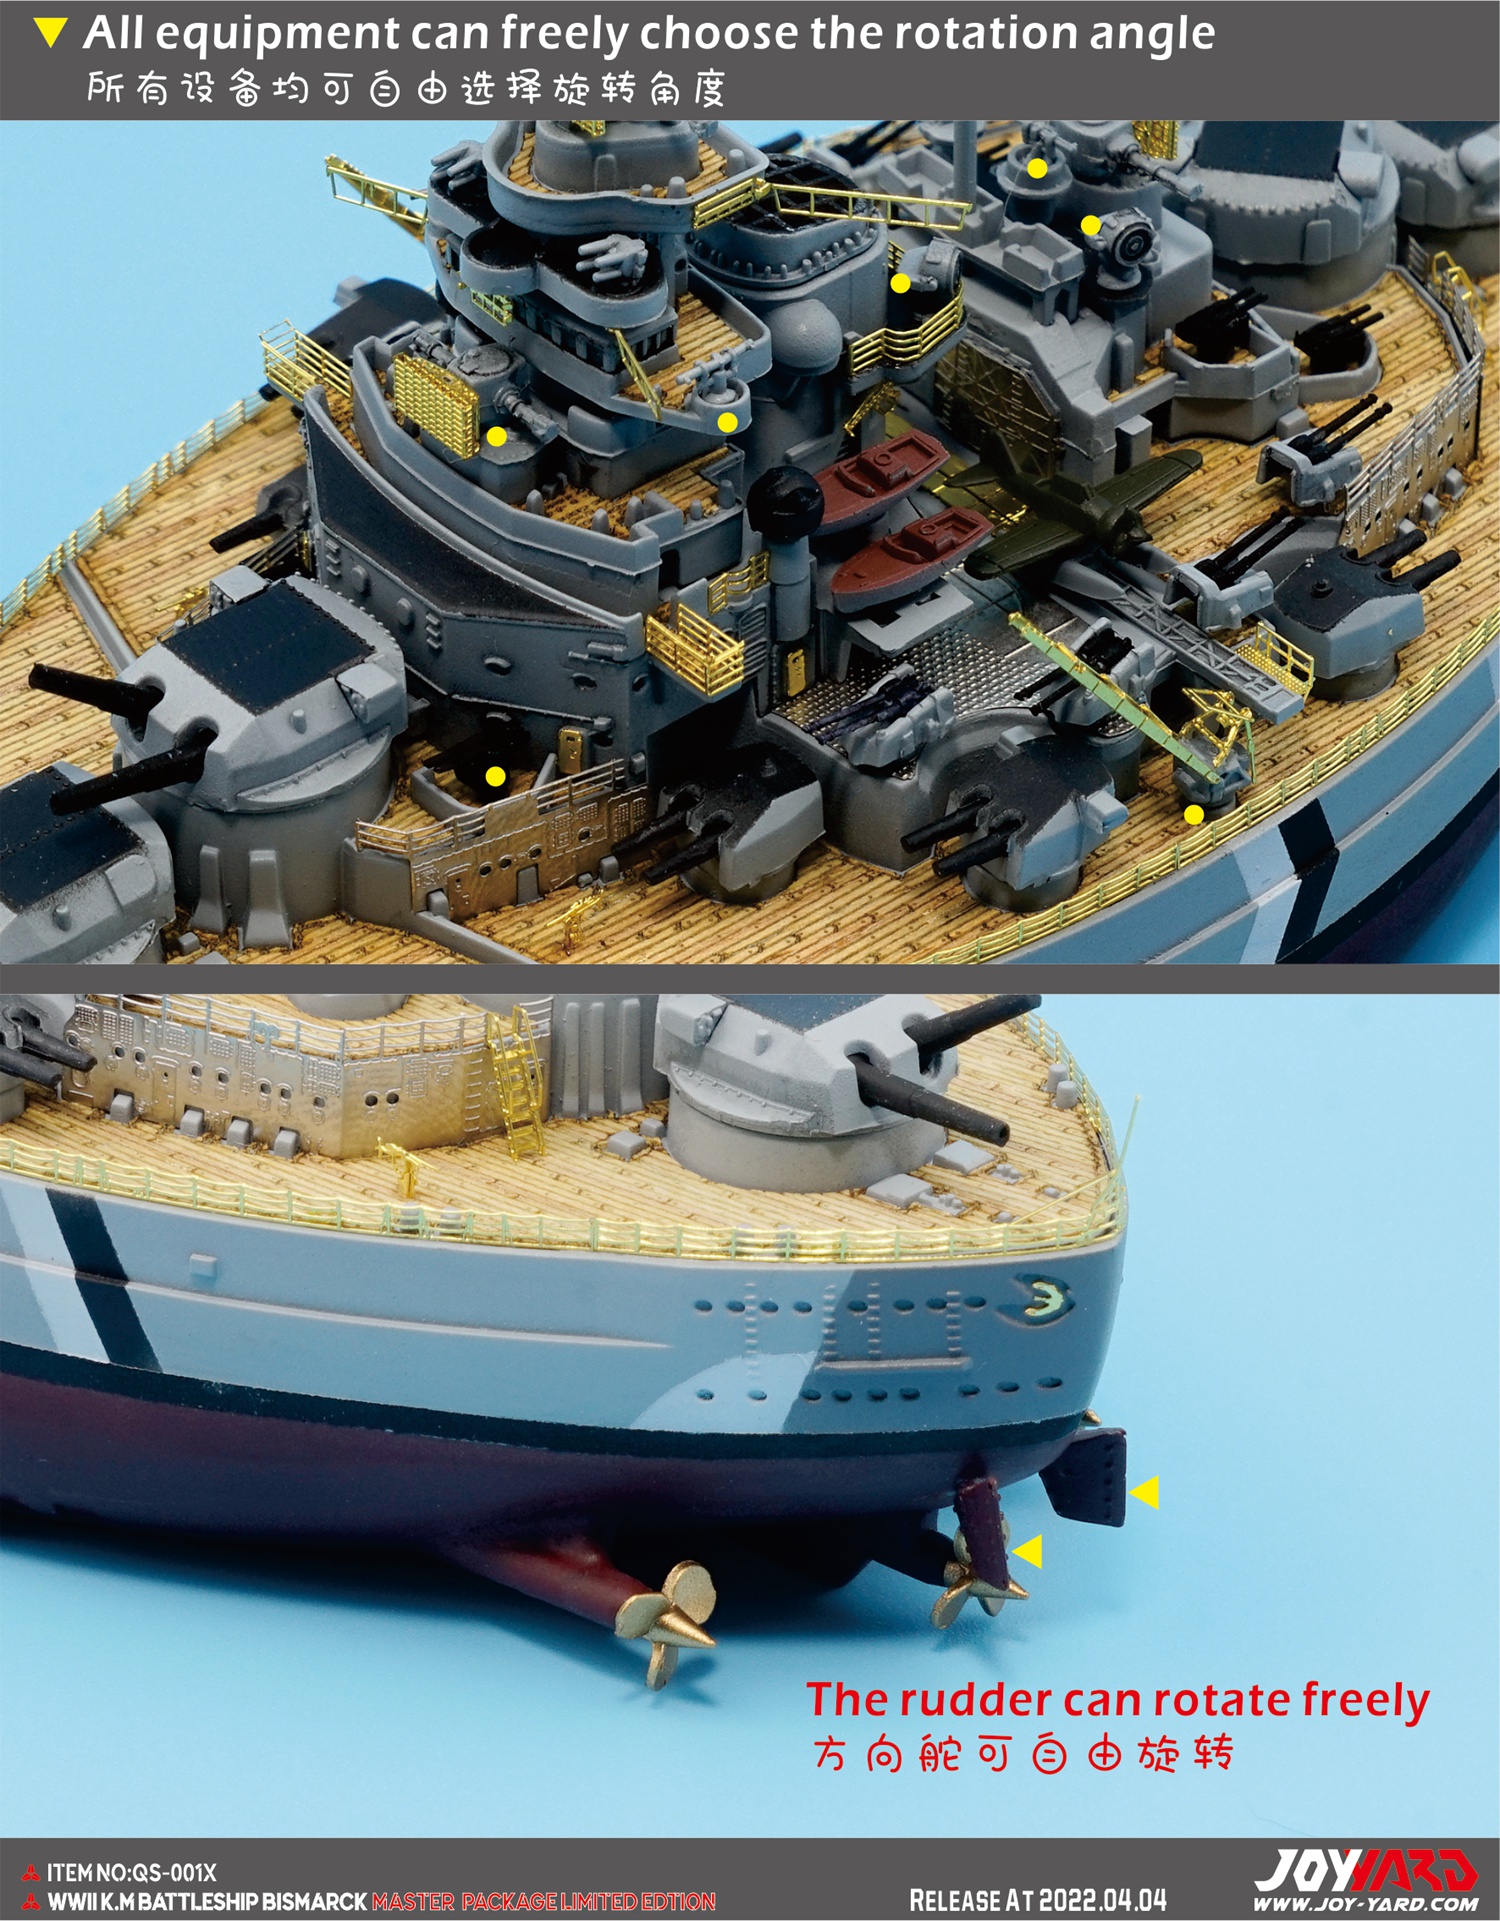 JOY YARD锦誉模型新品(QS-001X/002X)-Q版蛋船俾斯麦/提尔皮茨战列舰 